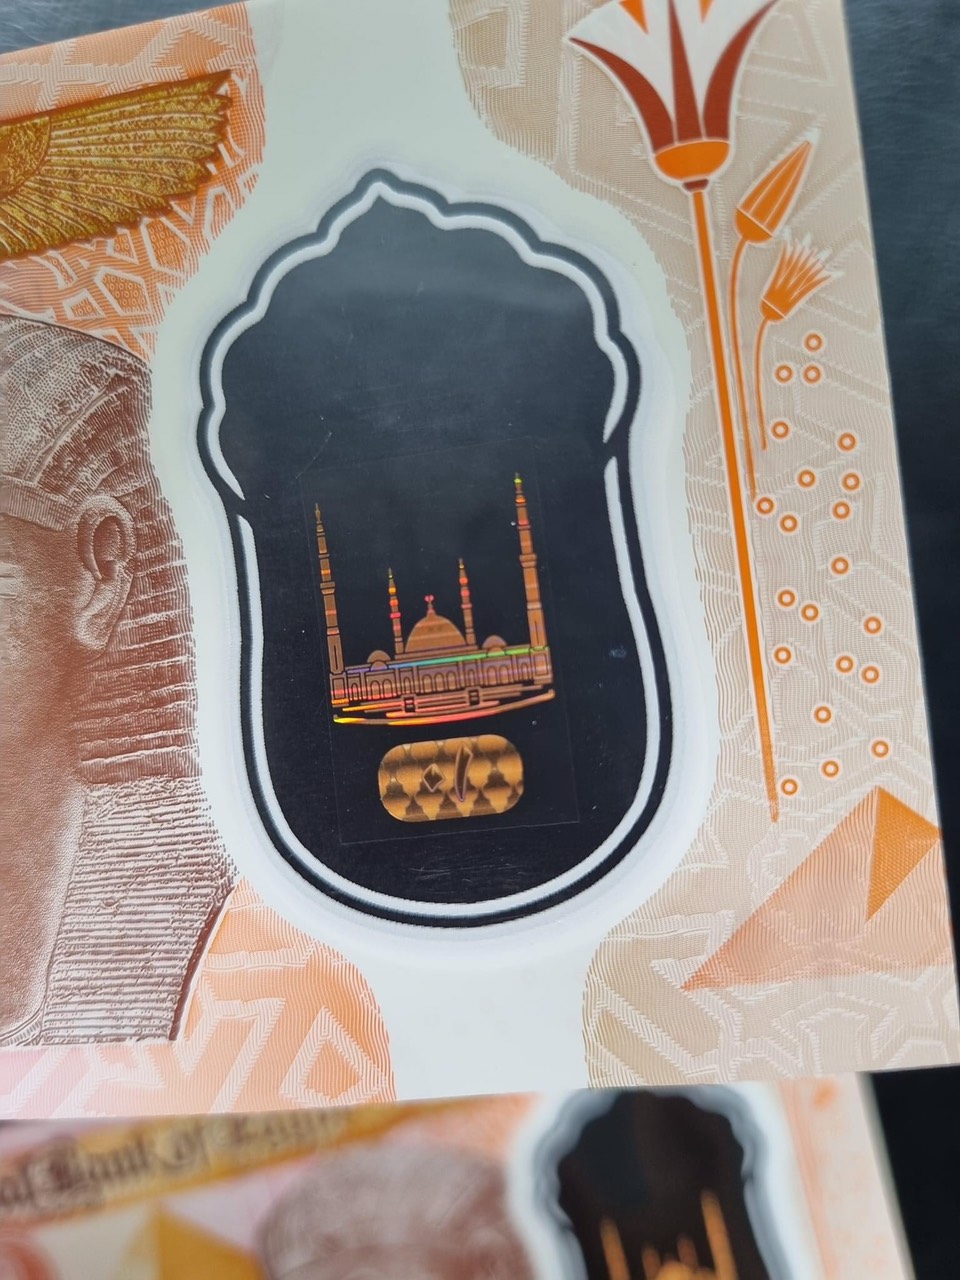 Tiền Polymer 10 pound Ai Cập mới phát hành mới cứng